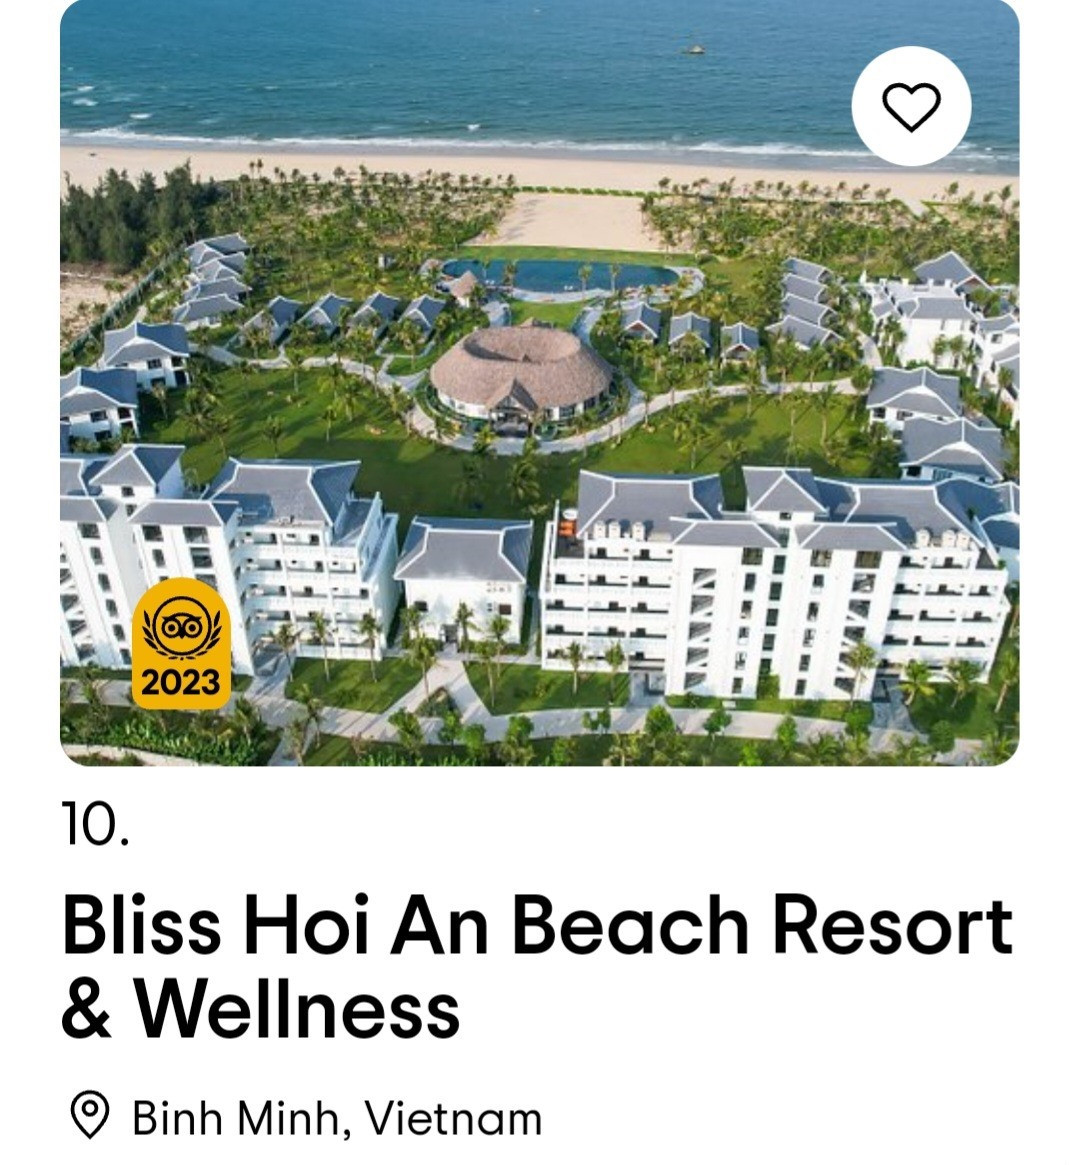 Hoi An Bliss Beach Resort and Wellness